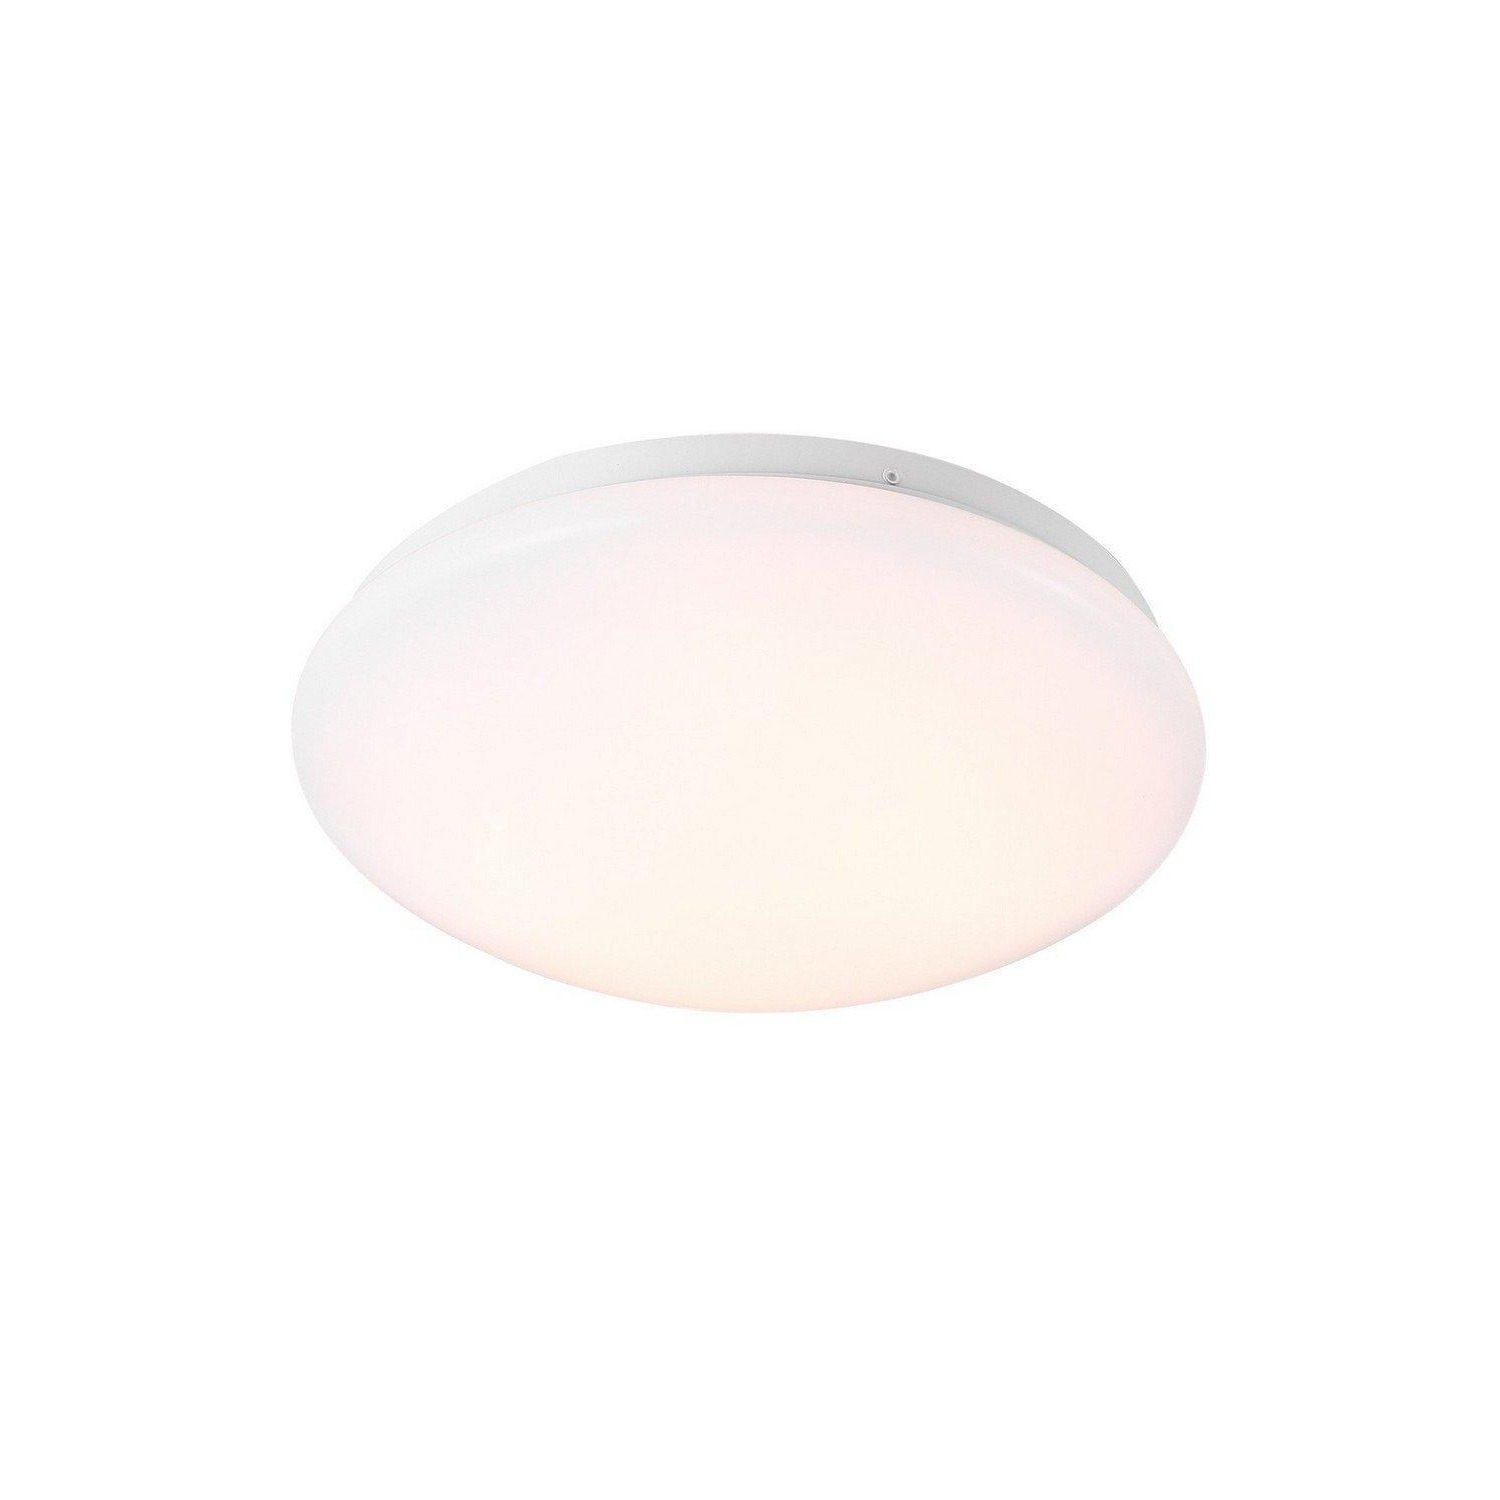 Mani 25cm LED Flush Ceiling Light White 3000K - image 1